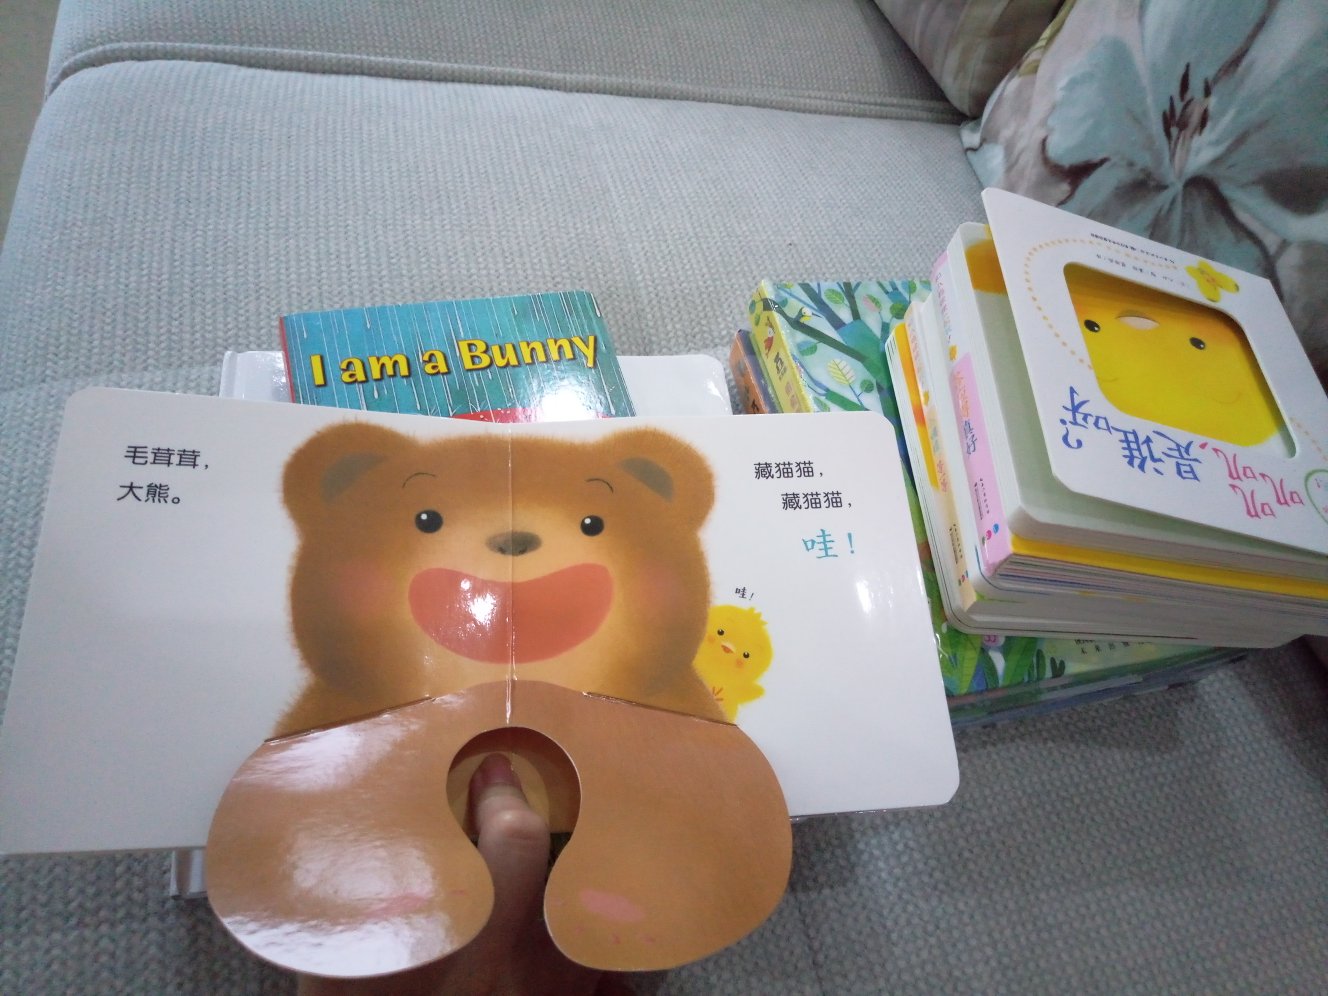 小朋友的书好可爱！！宝宝才四个月，还不太懂，希望能慢慢培养看书的习惯！